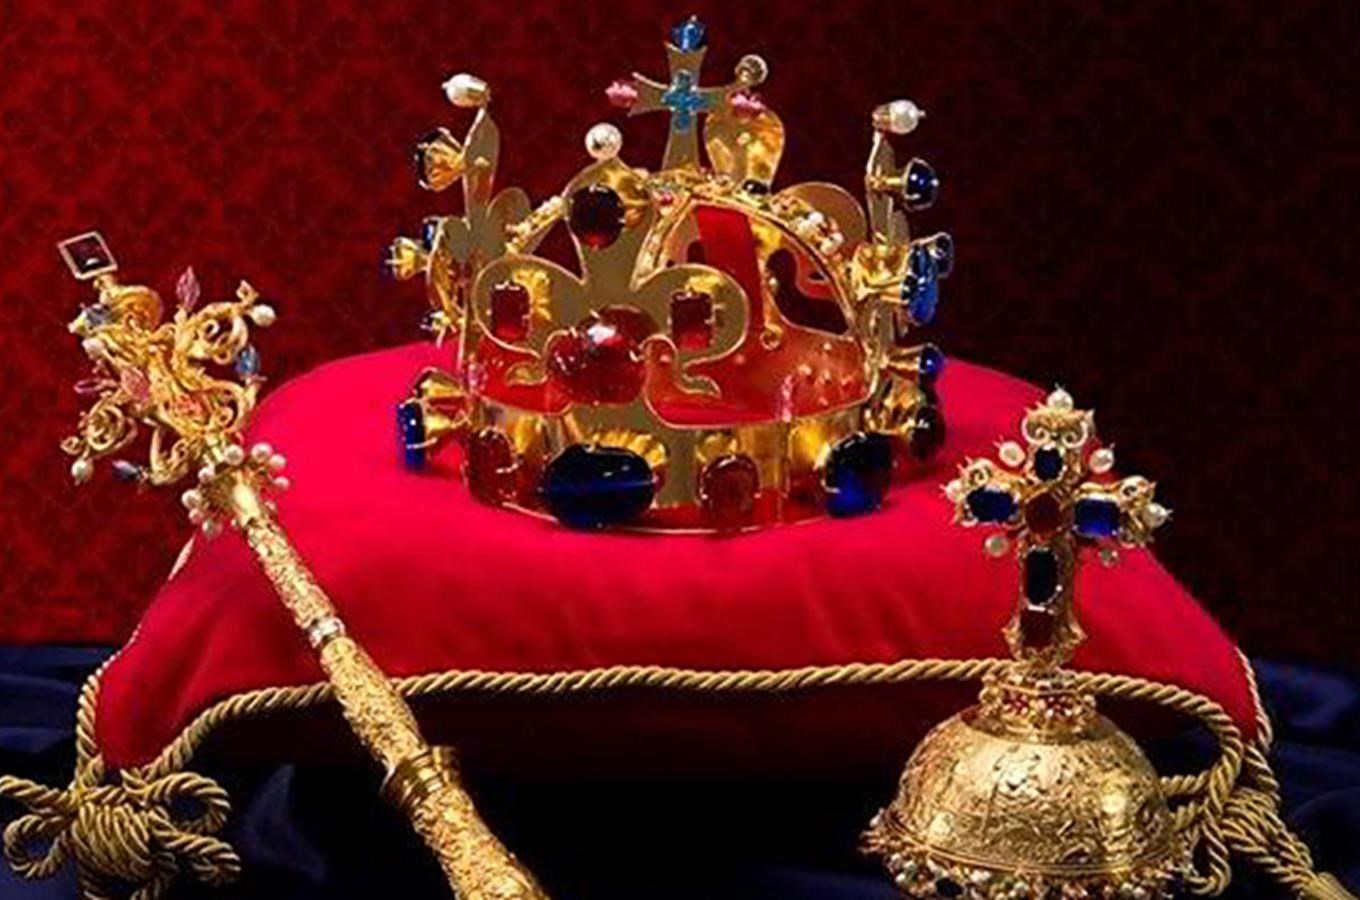 Na rok 2016 se chystají velkolepé oslavy císaře a krále Karla IV.